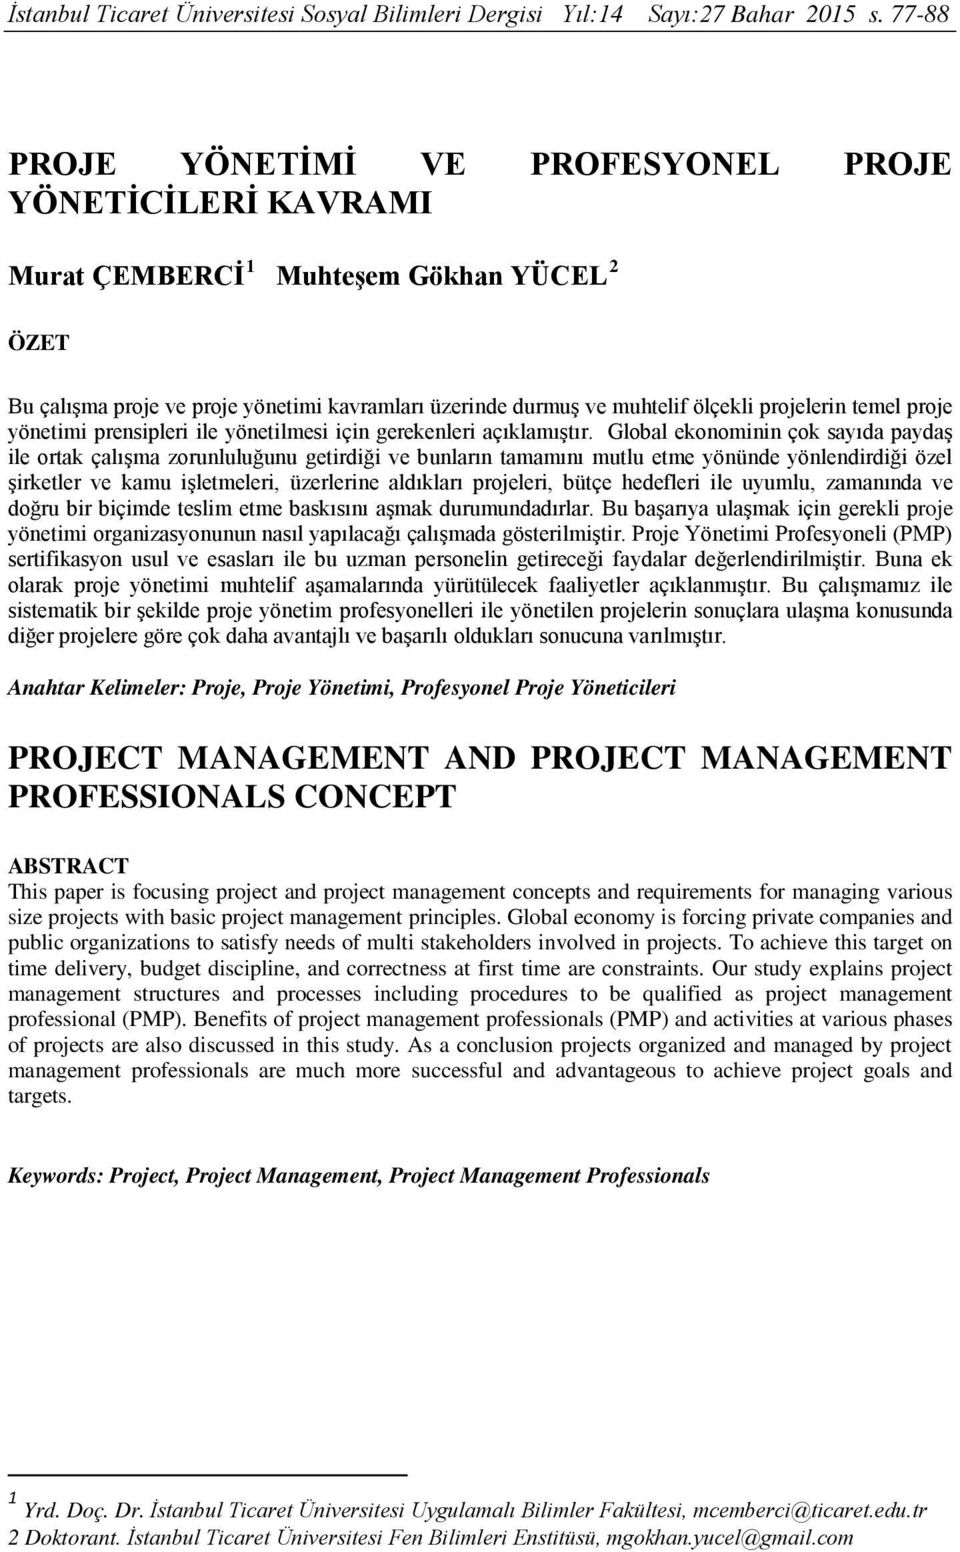 projelerin temel proje yönetimi prensipleri ile yönetilmesi için gerekenleri açıklamıştır.